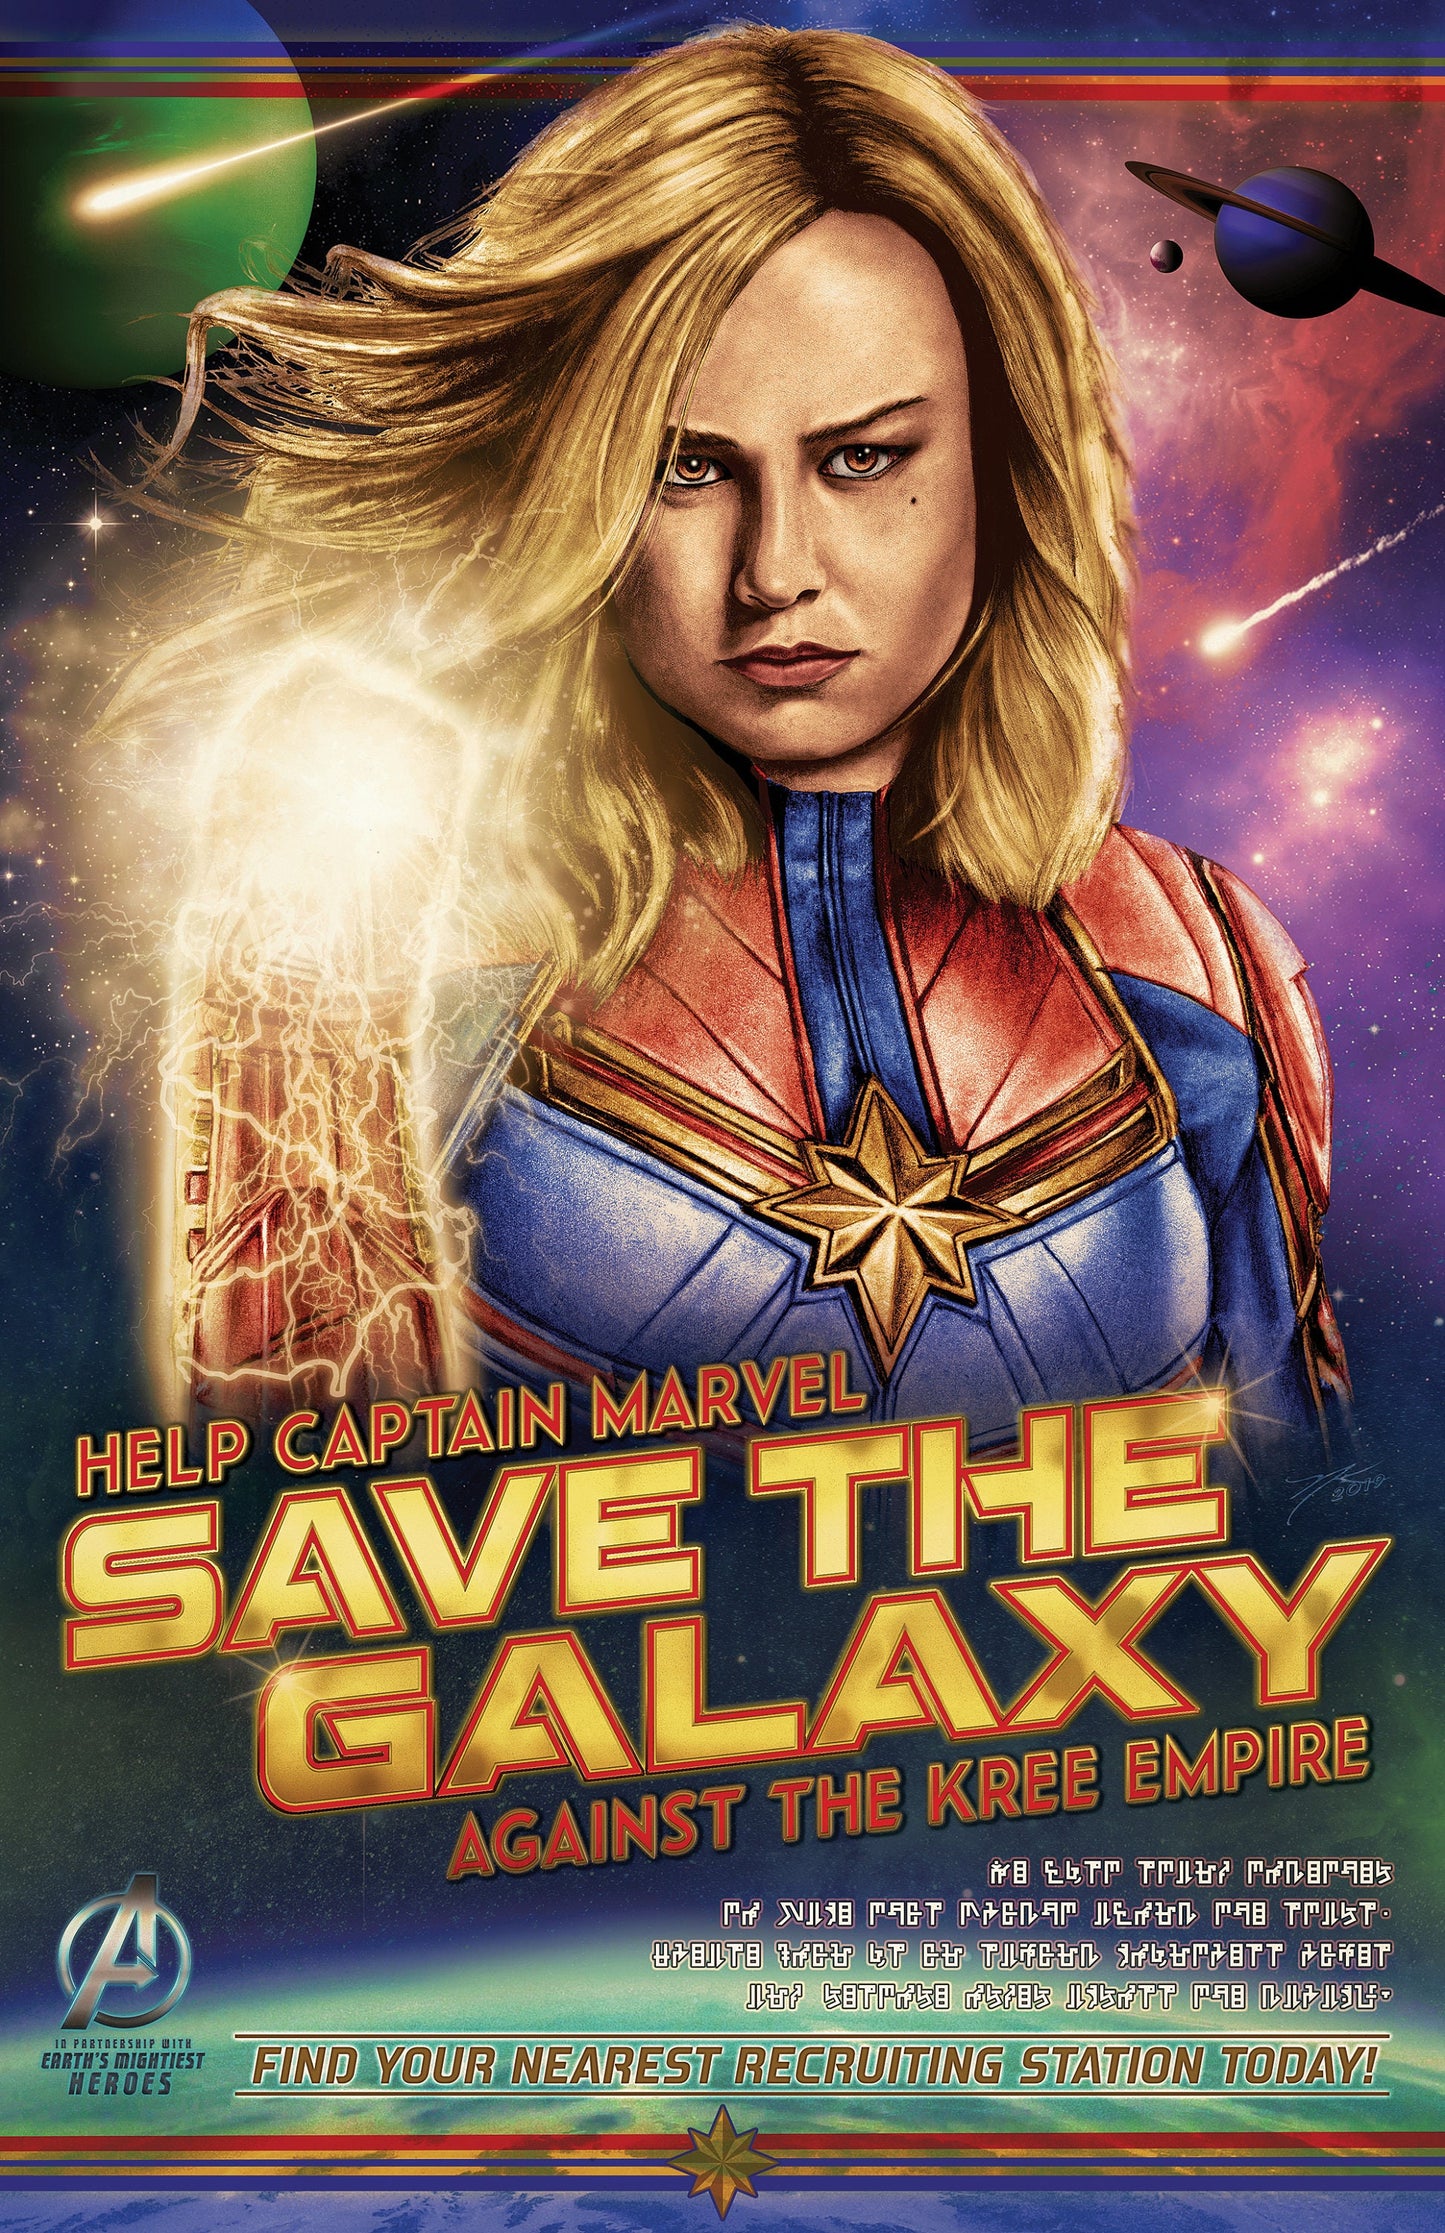 Captain Marvel Build-A-Bundle Triple Pack (Sepia / Pastel / Full Color) 11x17 Hand-Drawn Fan Poster Art • Brie Larson • Marvel Studios